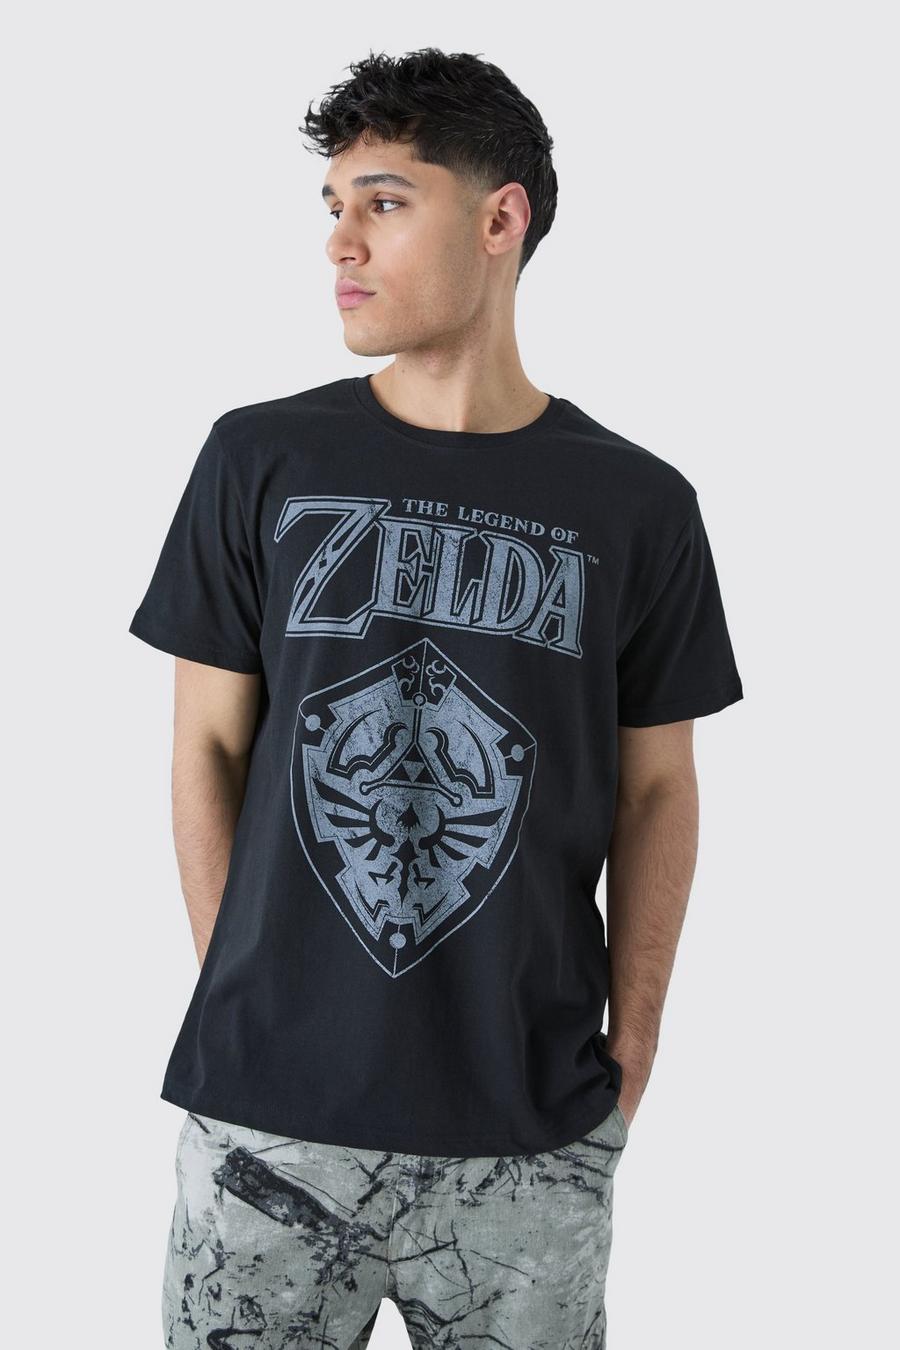 Black Oversized Legend of Zelda License T-shirt